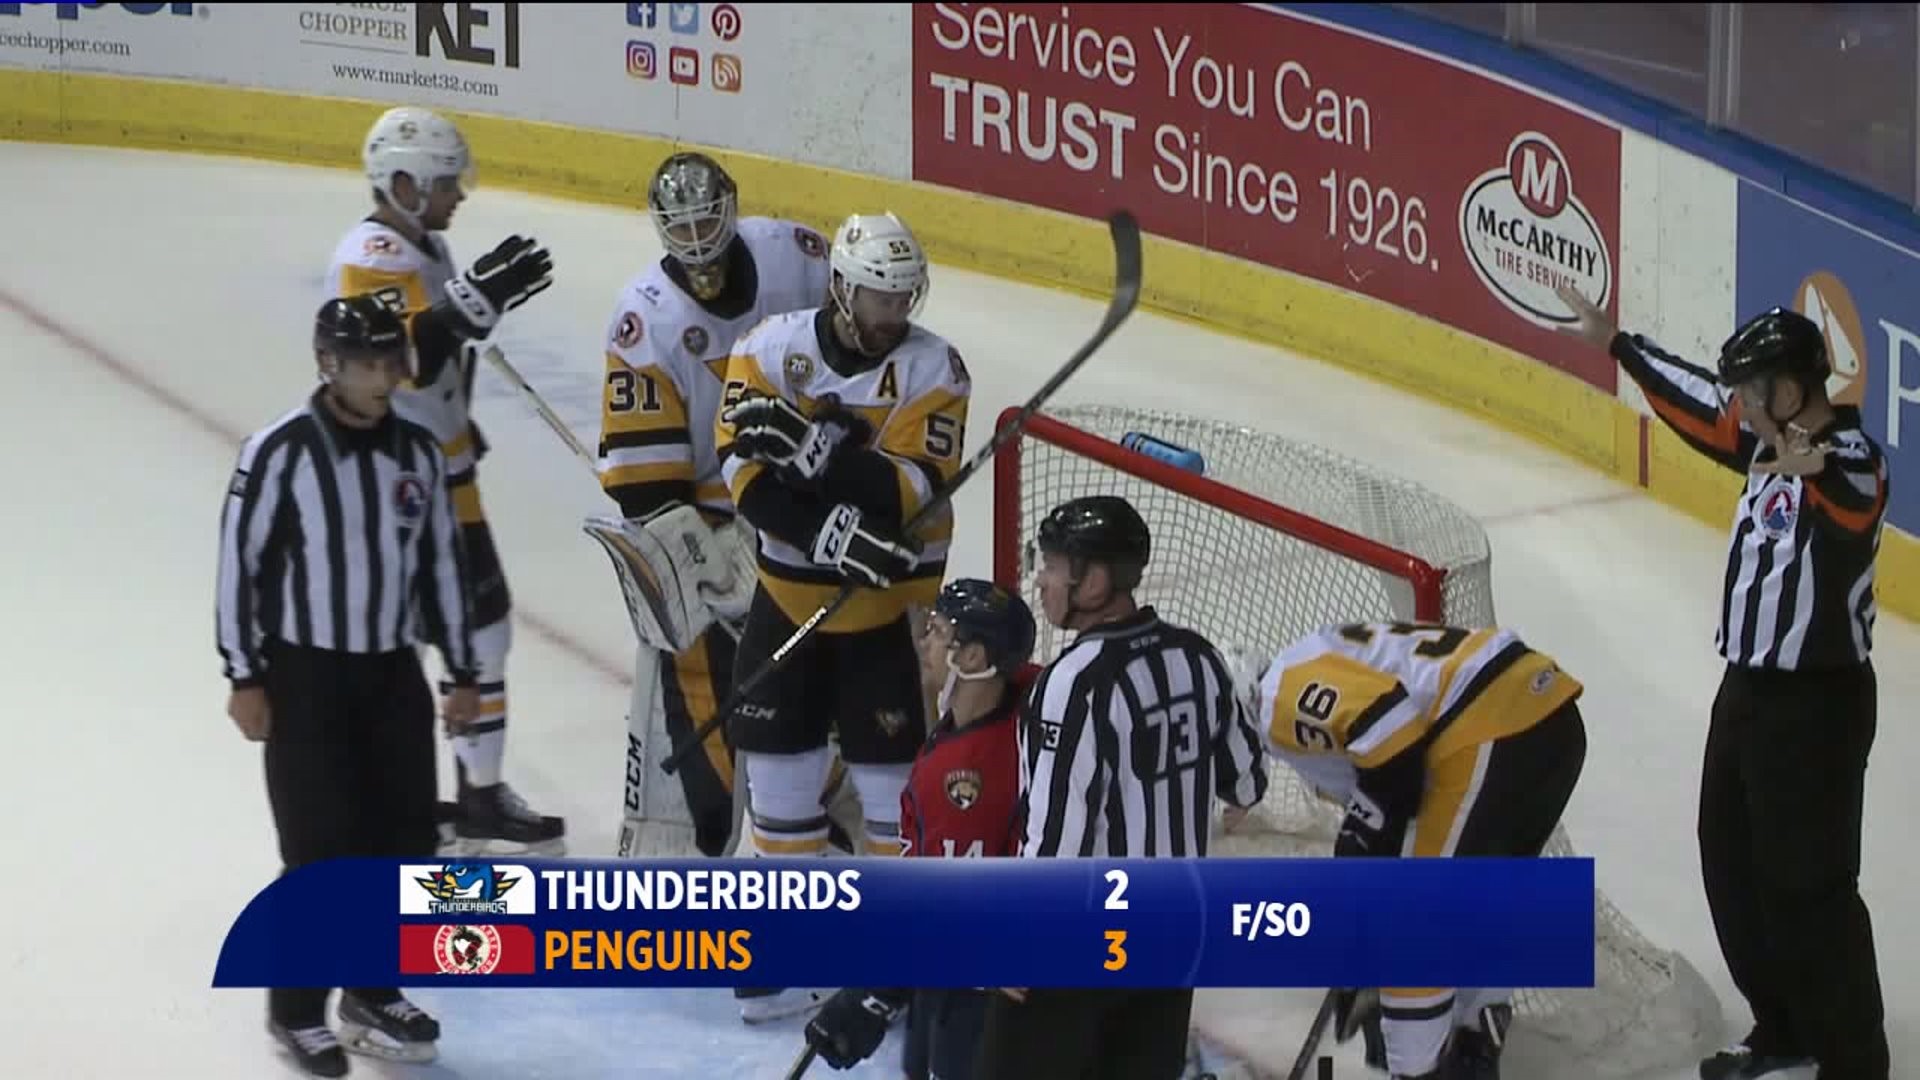 Penguins Win Season Opener in a Shootout Over Thunderbirds